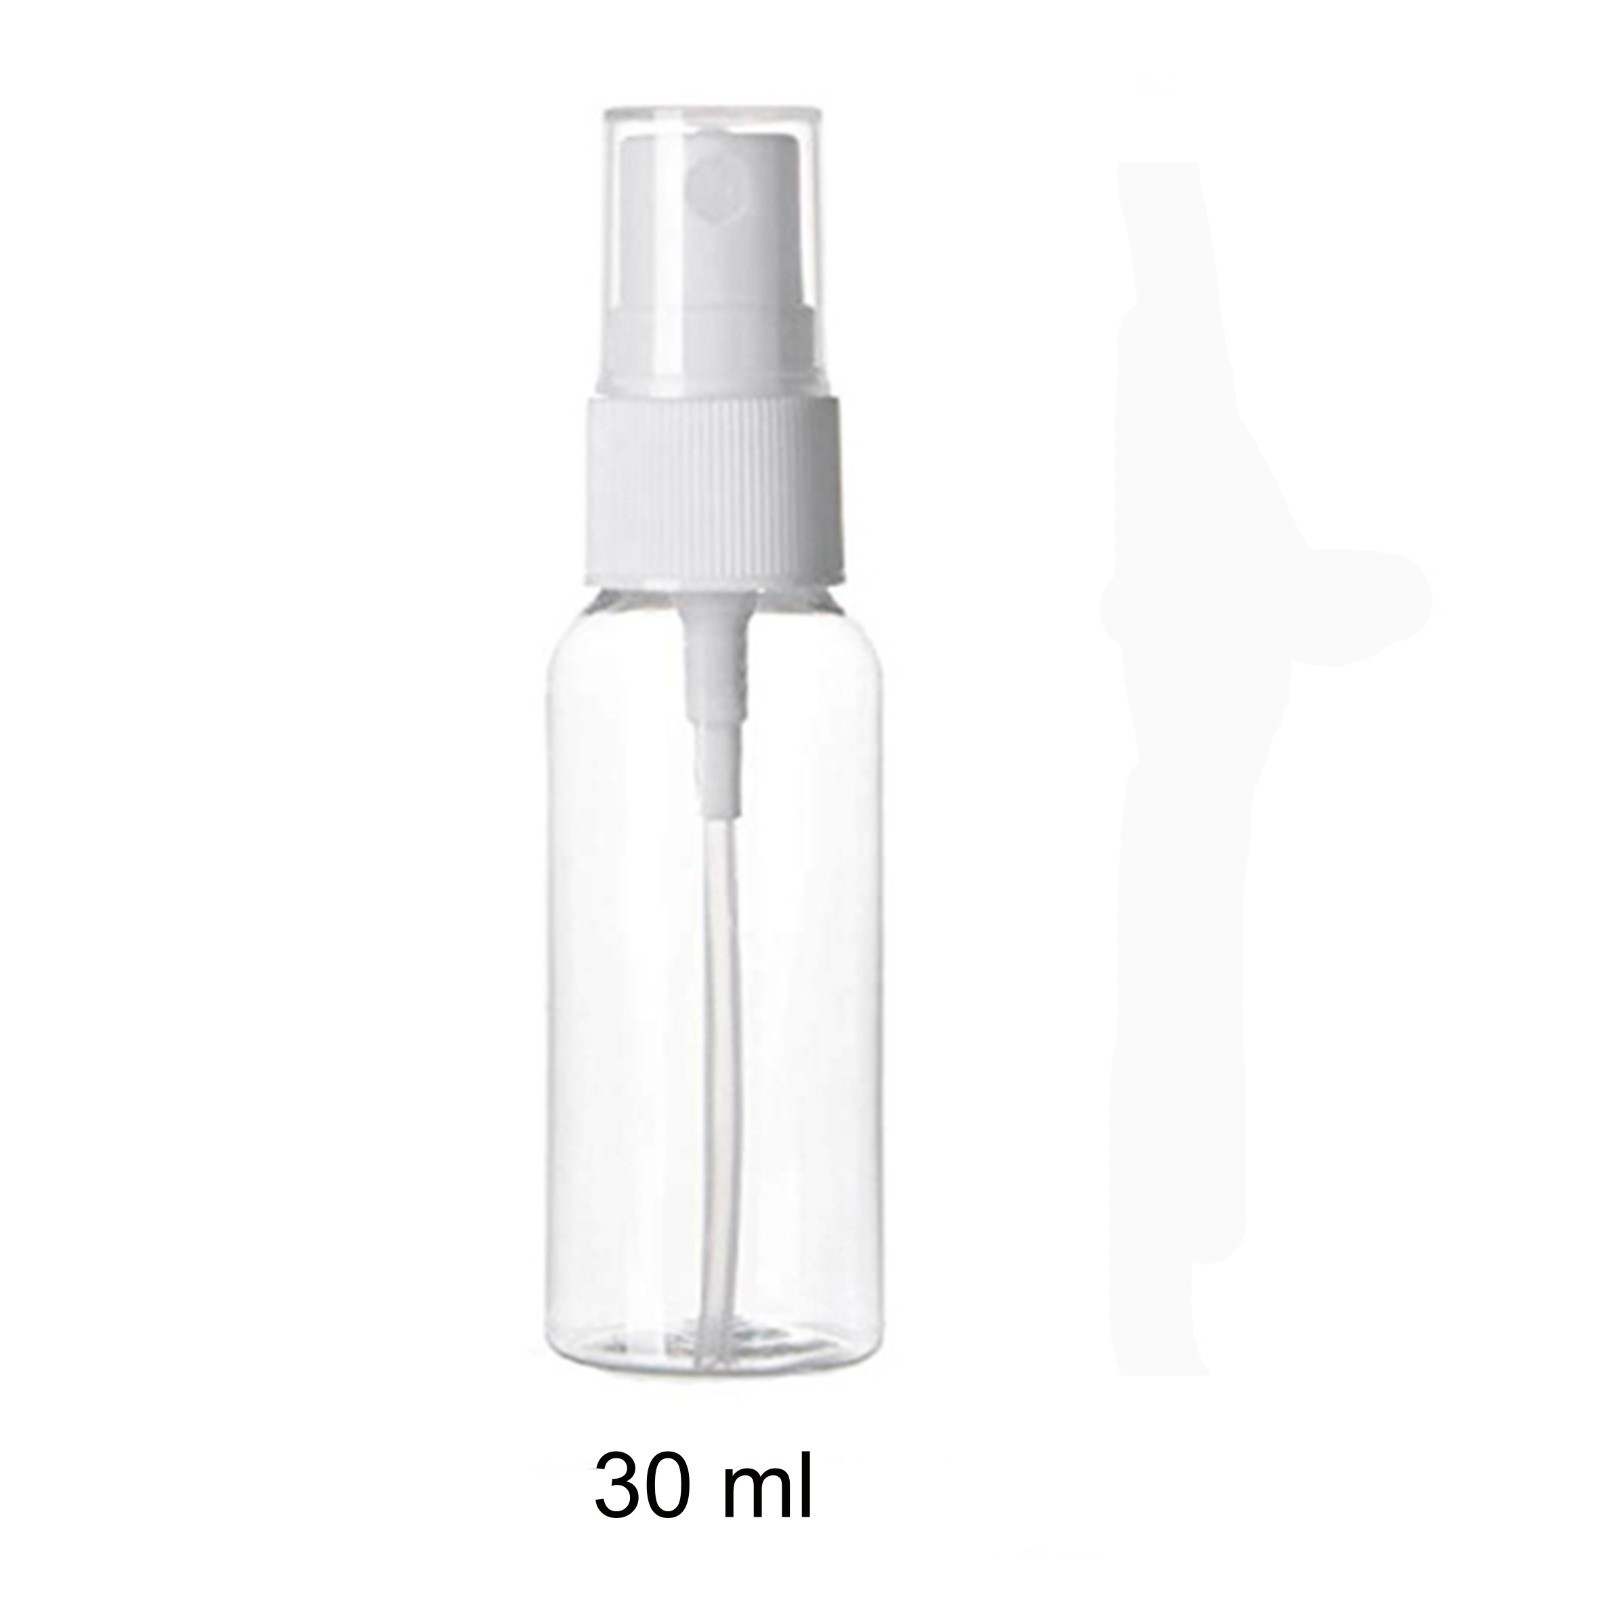 trasparente confezione da 3 Flacone spray per ombreggiatura in polietilene Beeria 30 ml 